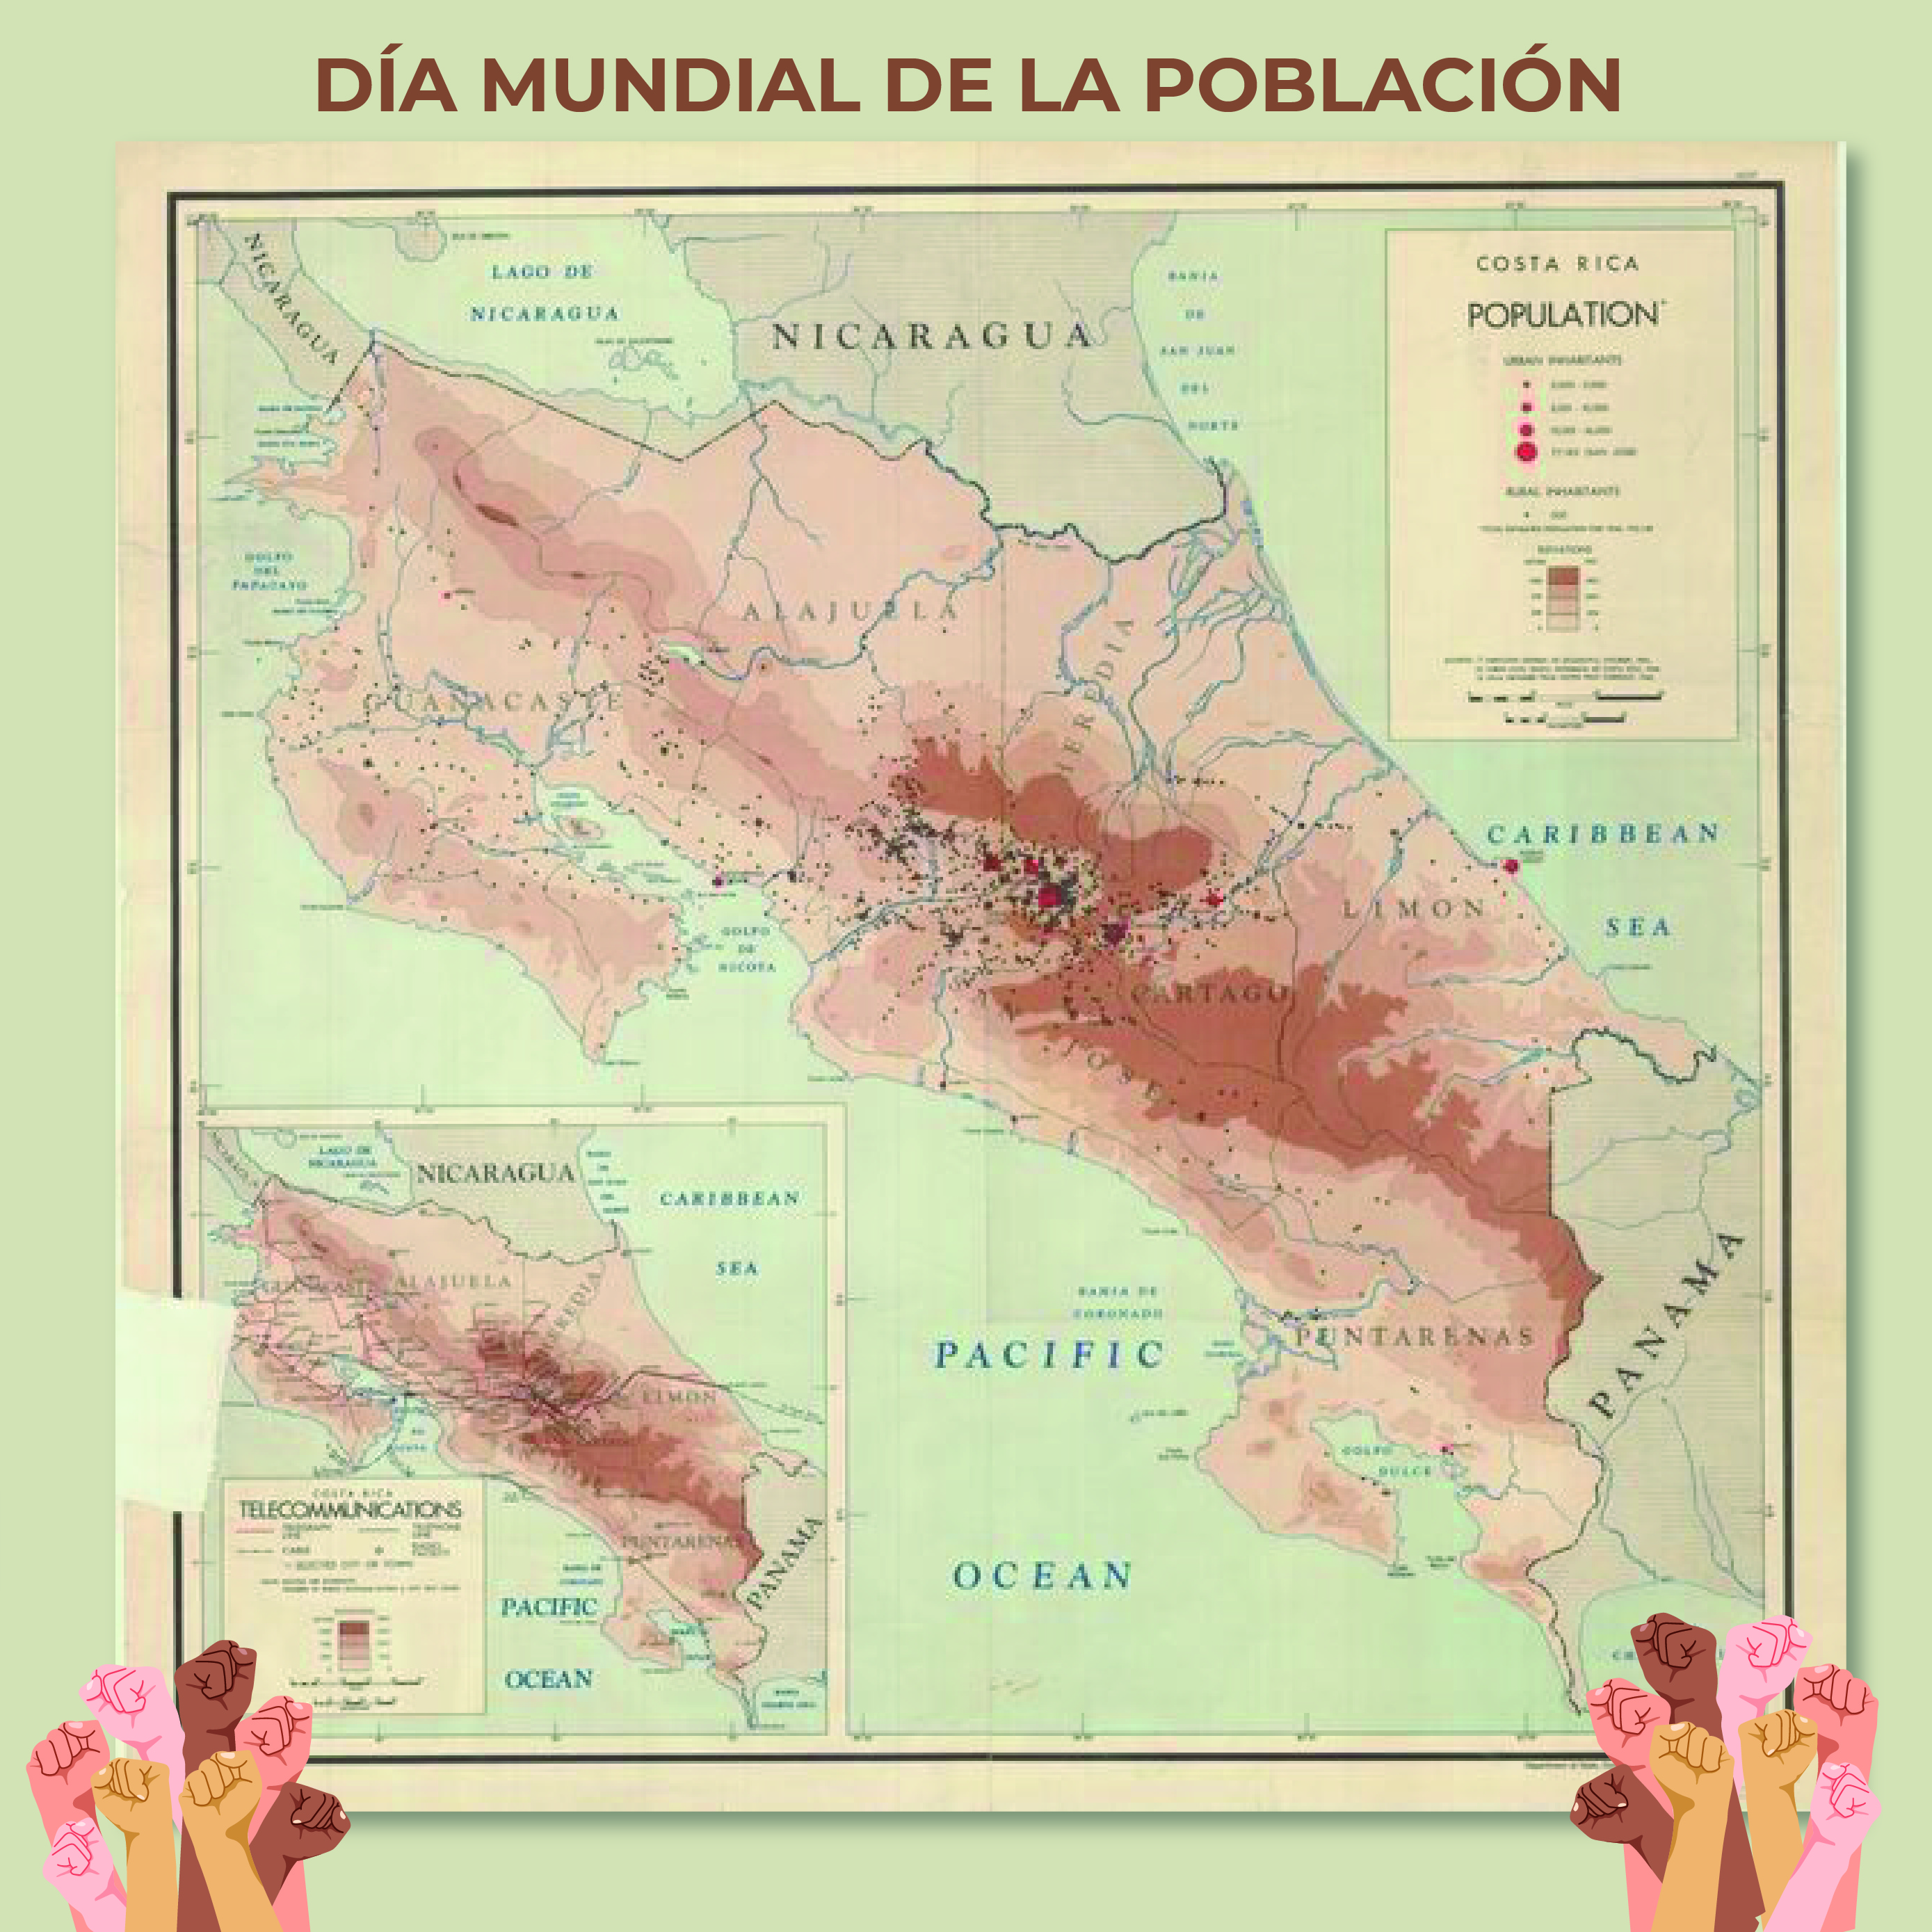 Para conmemorar esta fecha, la Mapoteca presenta el mapa: “Distribución de la población en Costa Rica”, elaborado en 1946.